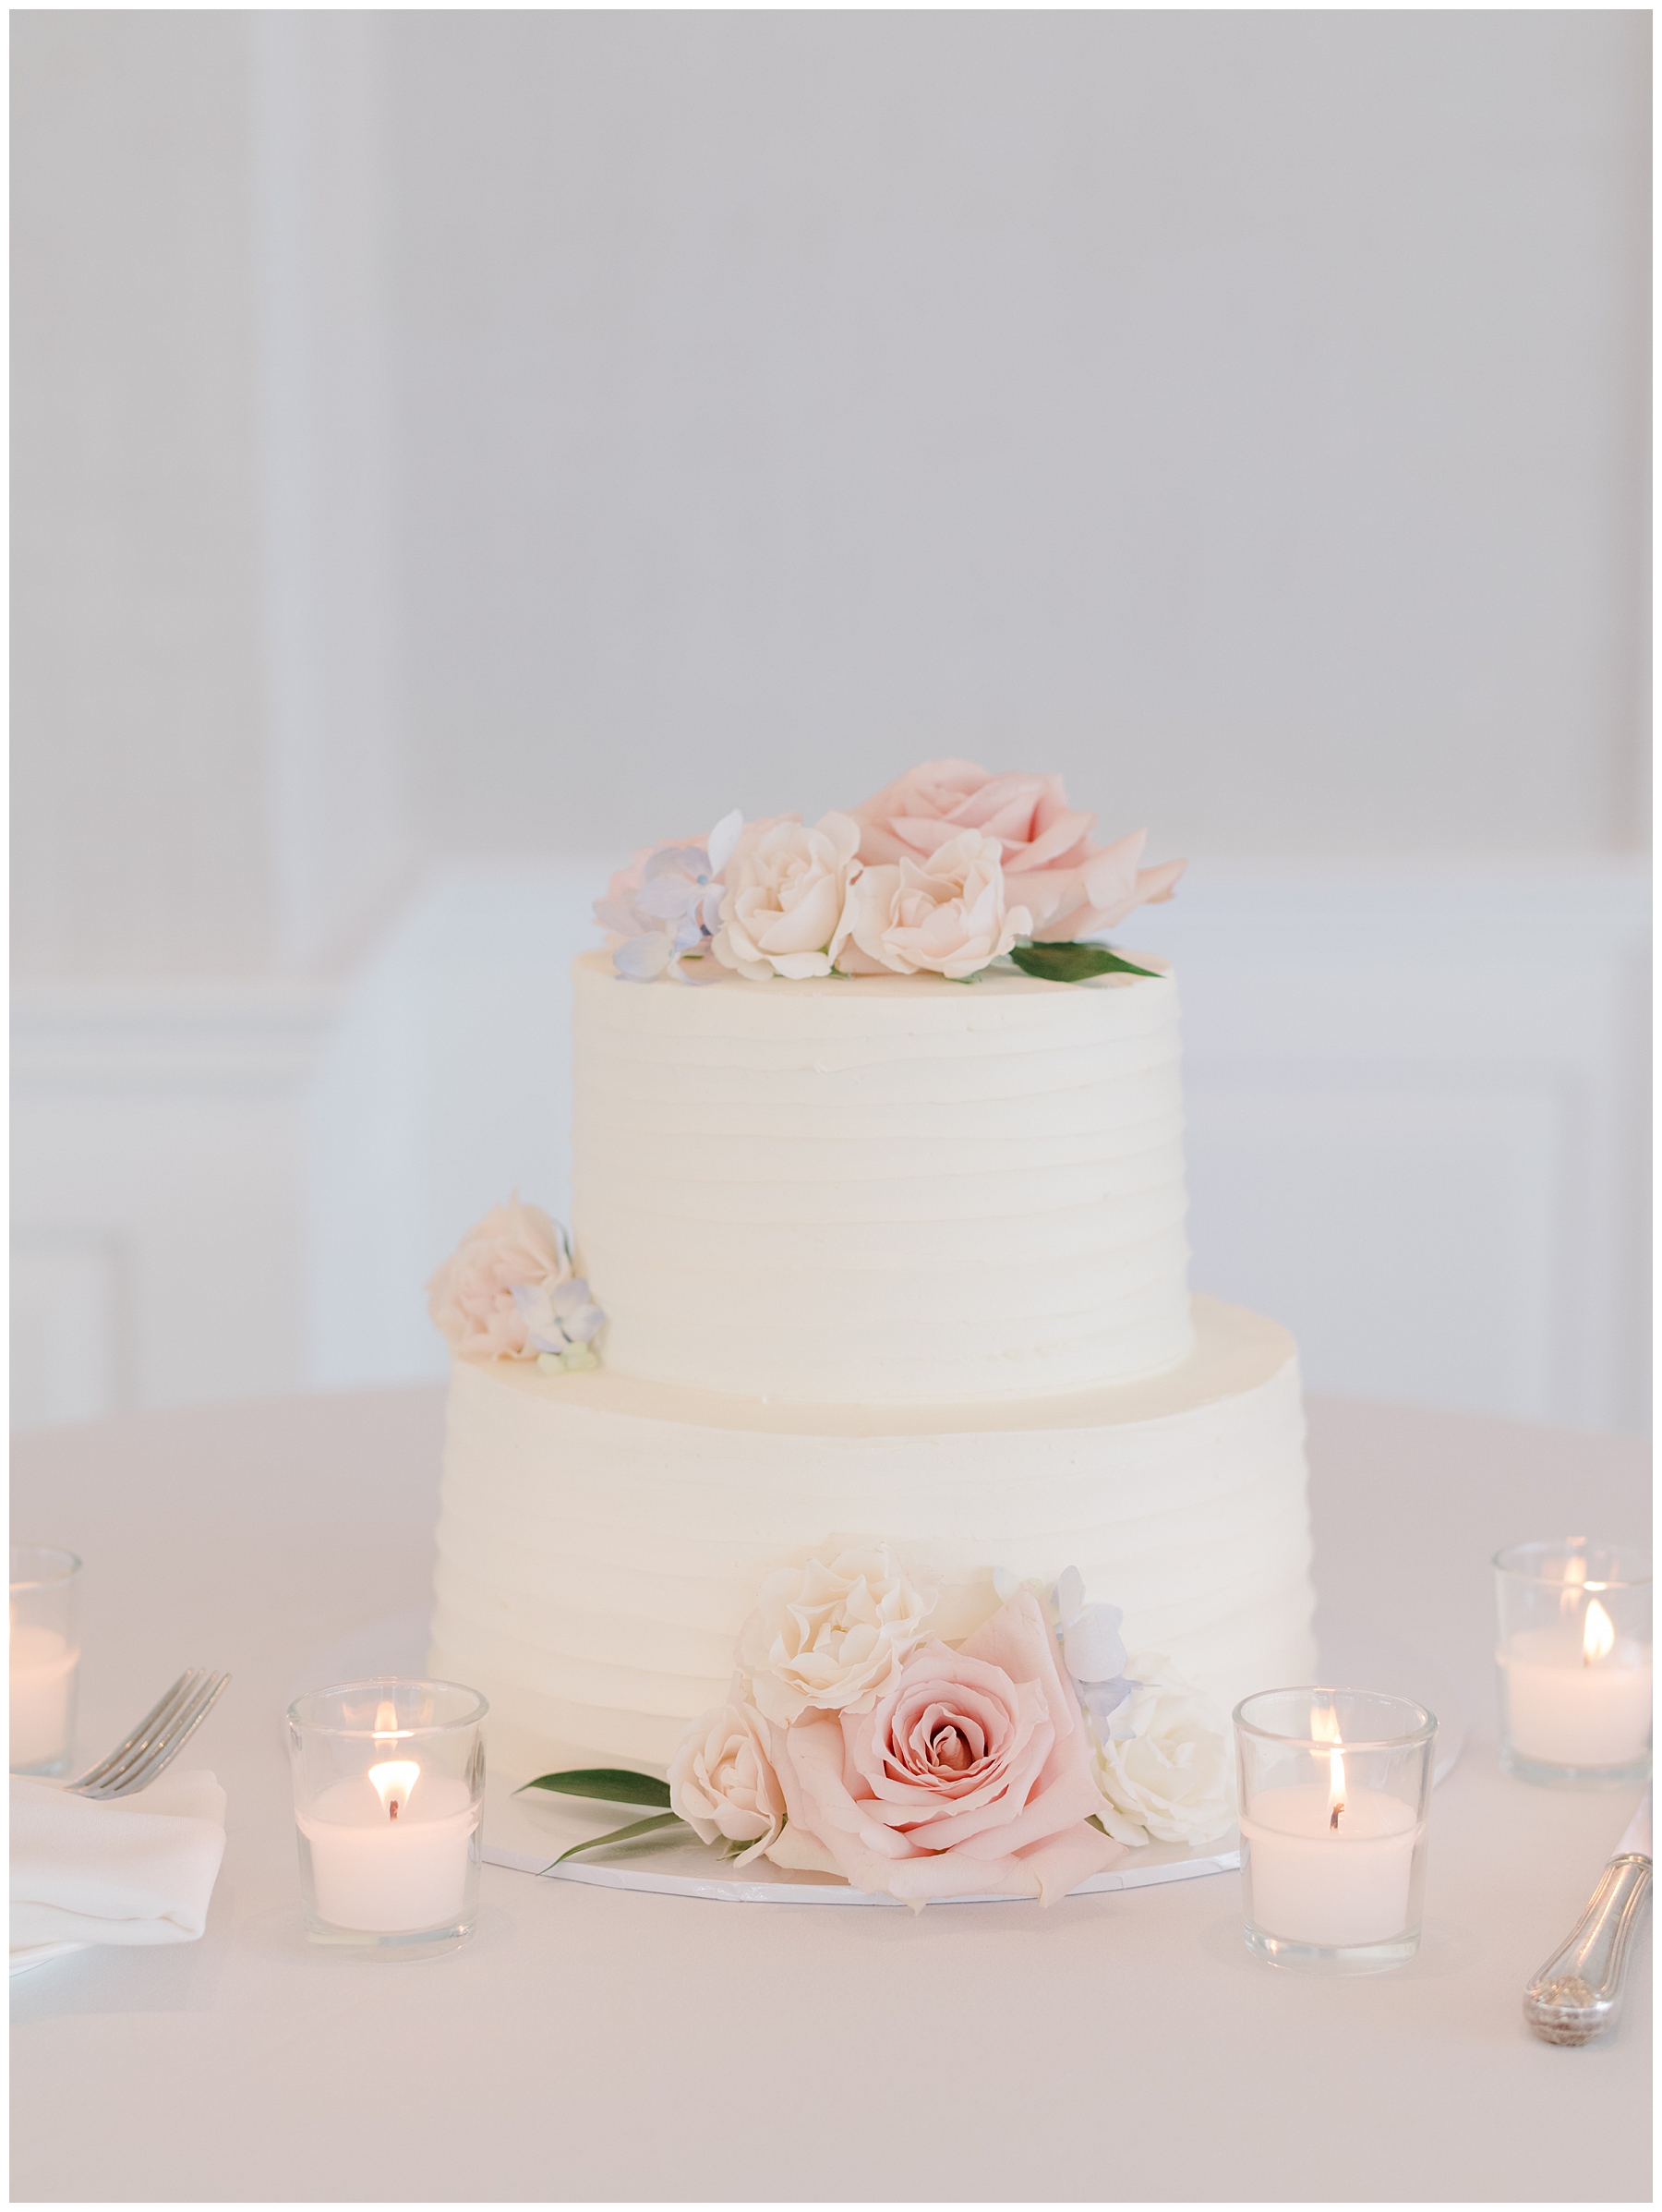 Modern Wedding cake from at Wychmere Beach Club wedding